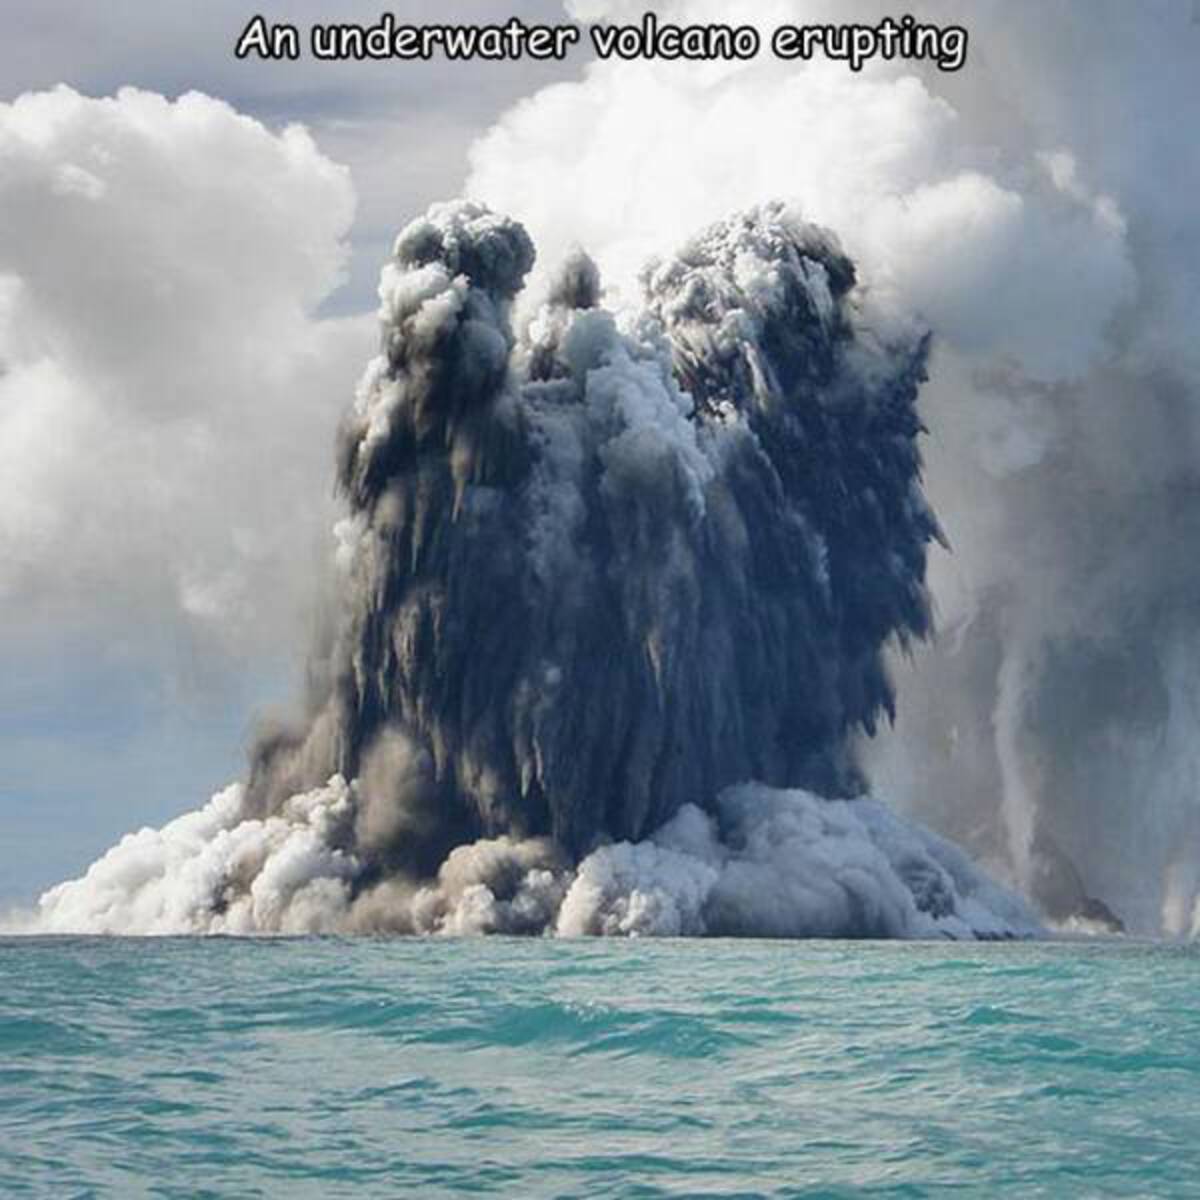 largest underwater volcano - An underwater volcano erupting